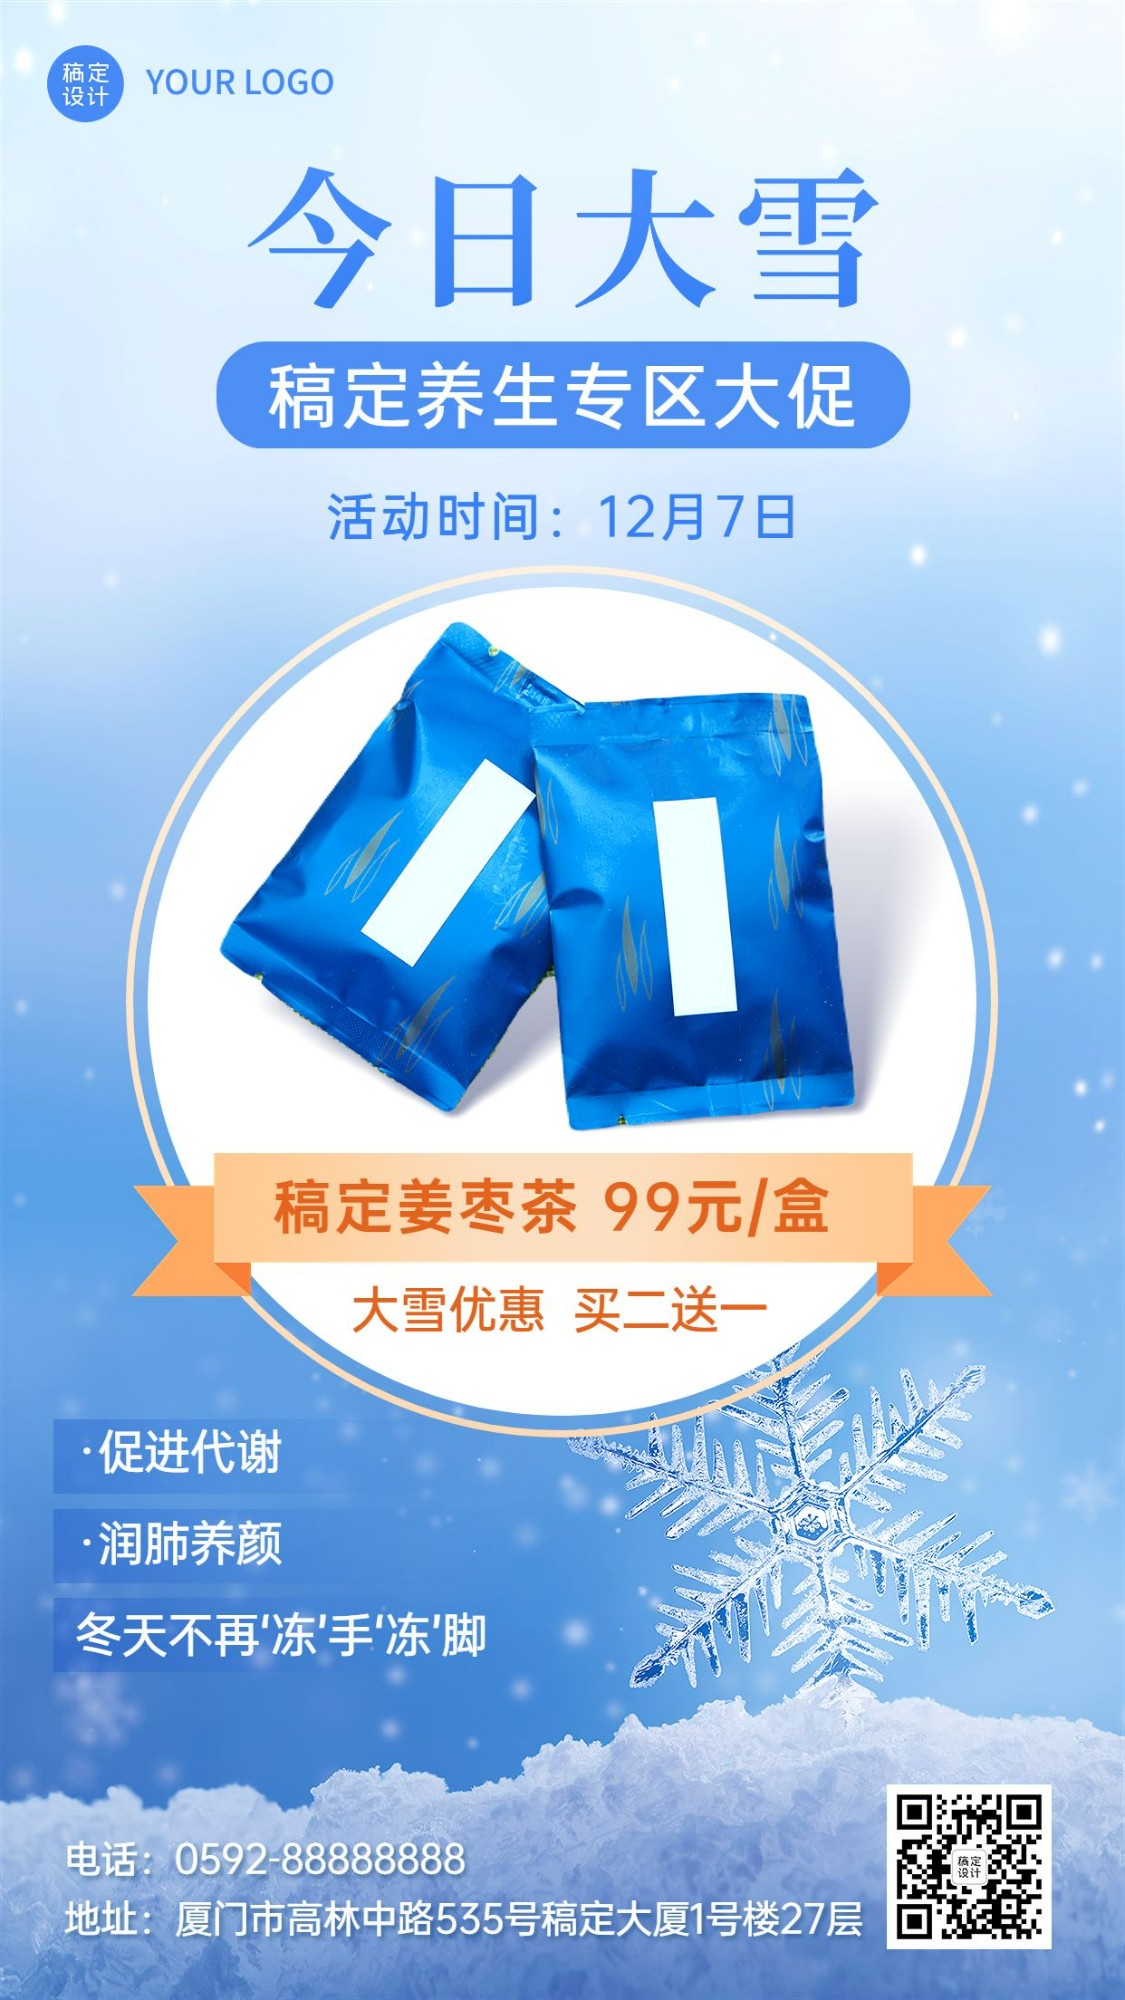 微商大雪节气养生保健产品展示营销手机海报